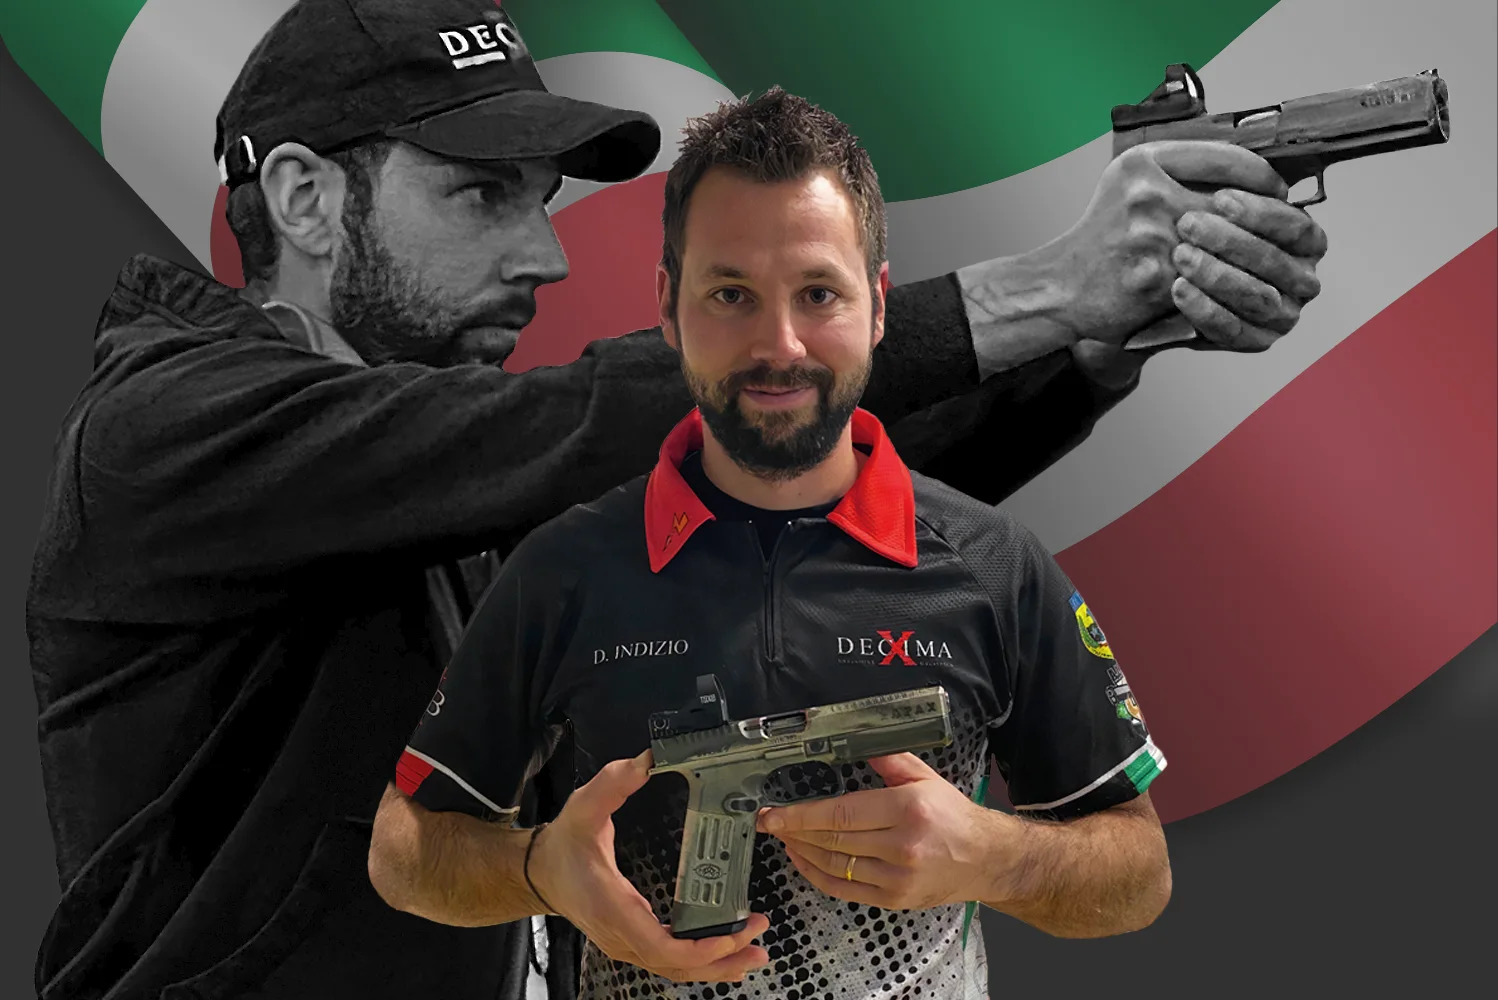 Davide-Indizio-decimadb-ipsc-shooting-team-IPSC-meet-the-team